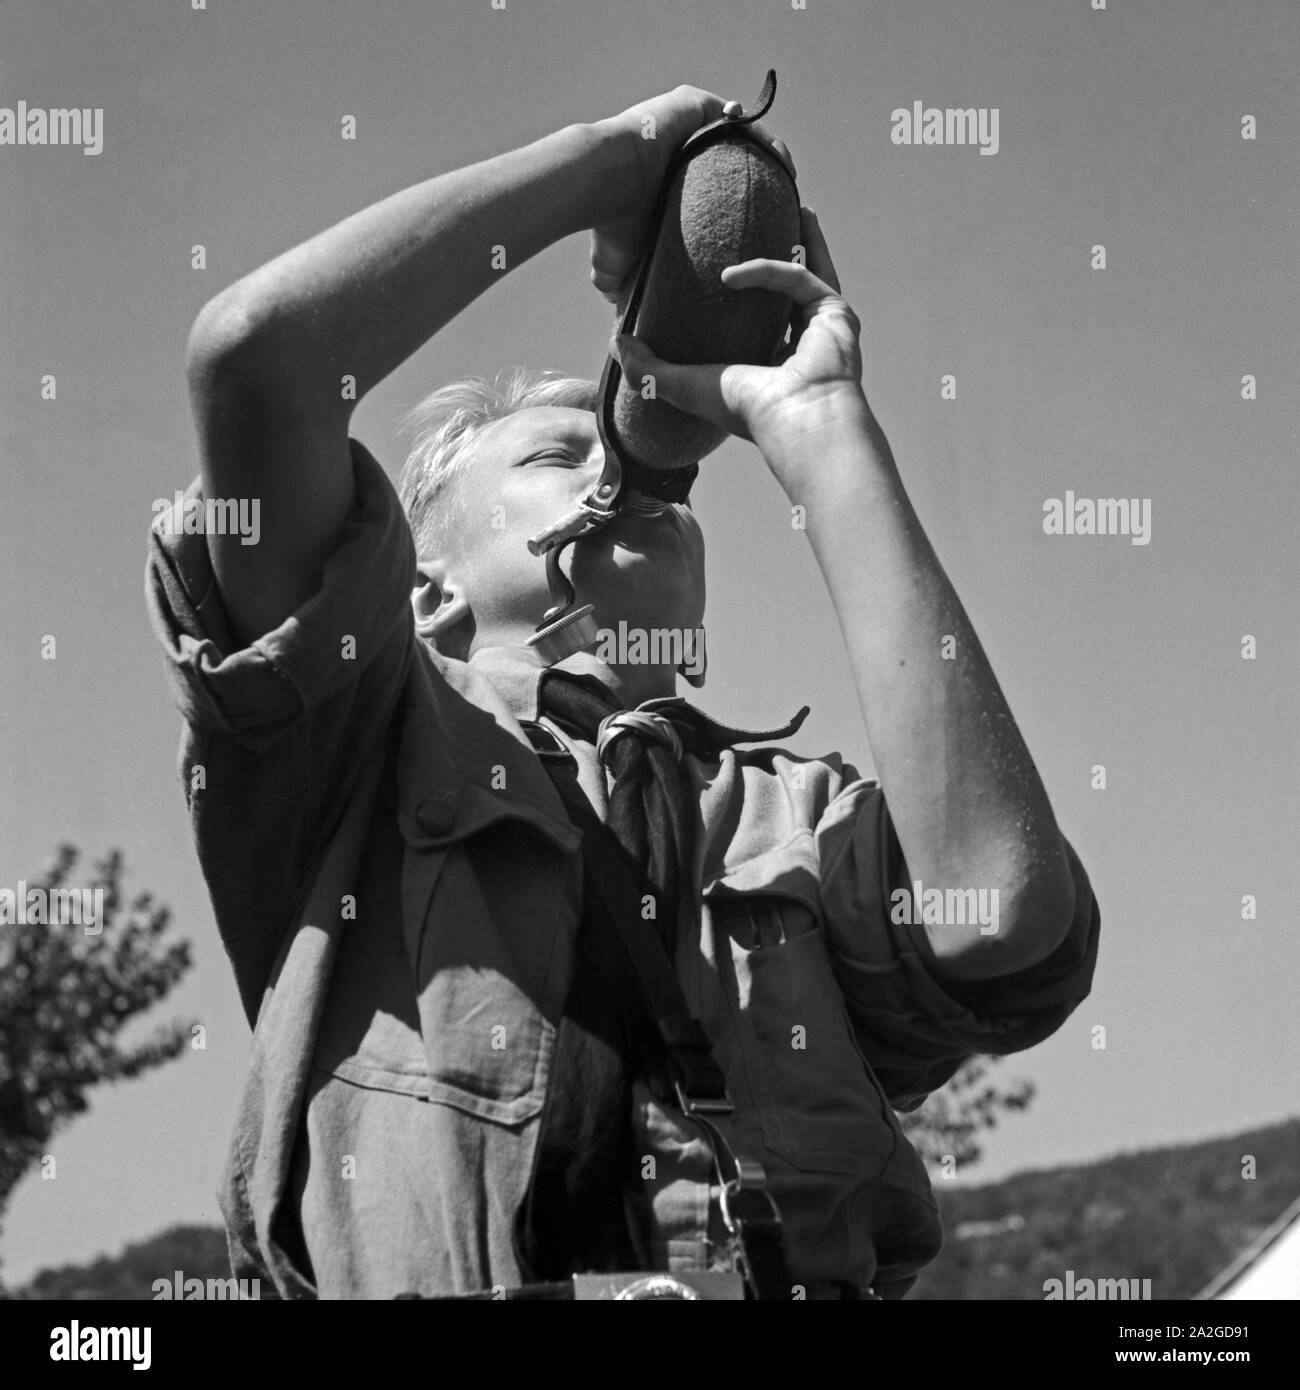 Durstiger Hitlerjunge trinkt aus seiner Feldflasche im Hitlerjugend Lager, Österreich 1930er Jahre. Thirsty Hitle youth dirnking from his water bottle at the Hitler youth camp, Austria 1930s. Stock Photo